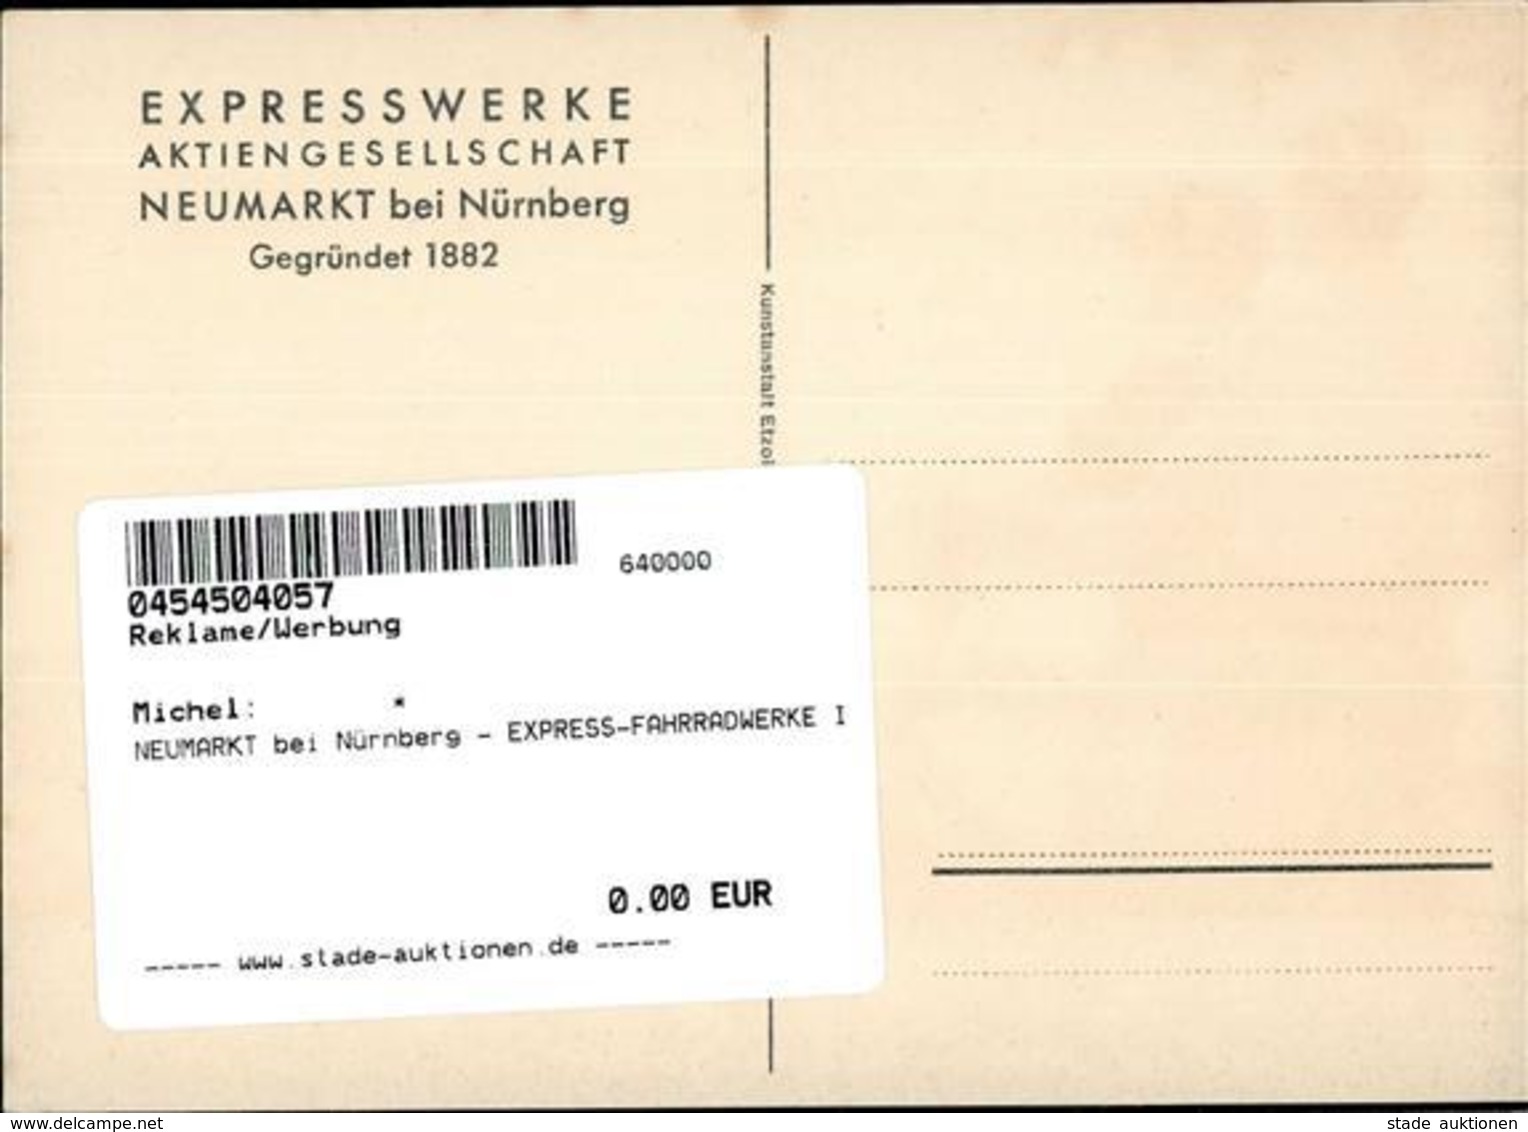 NEUMARKT Bei Nürnberg - EXPRESS-FAHRRADWERKE I - Treni